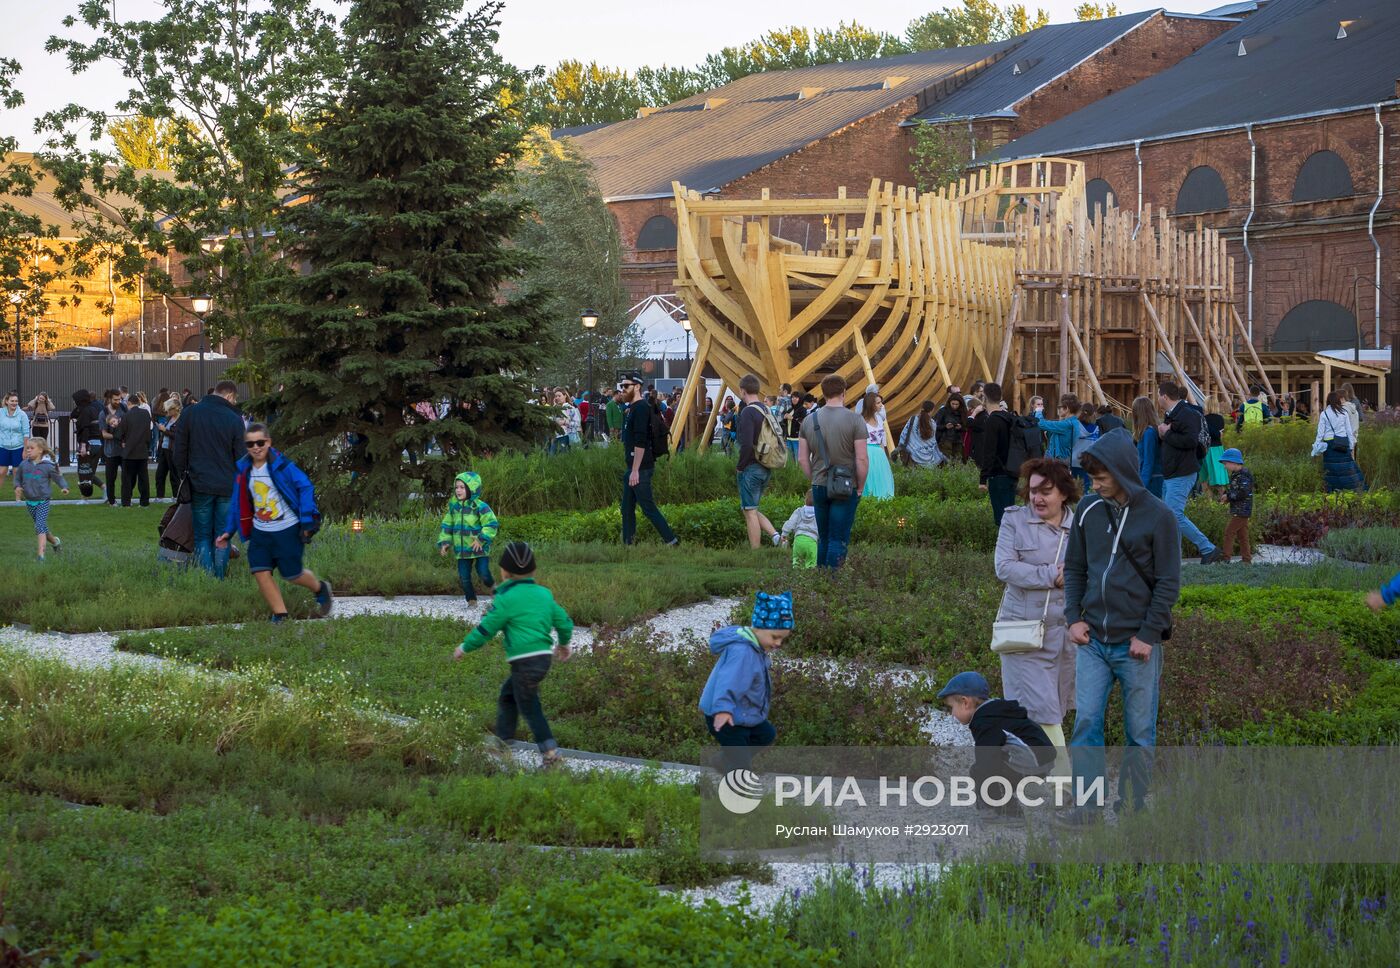 Открытие культурного пространства "Новая Голландия" в Санкт-Петербурге